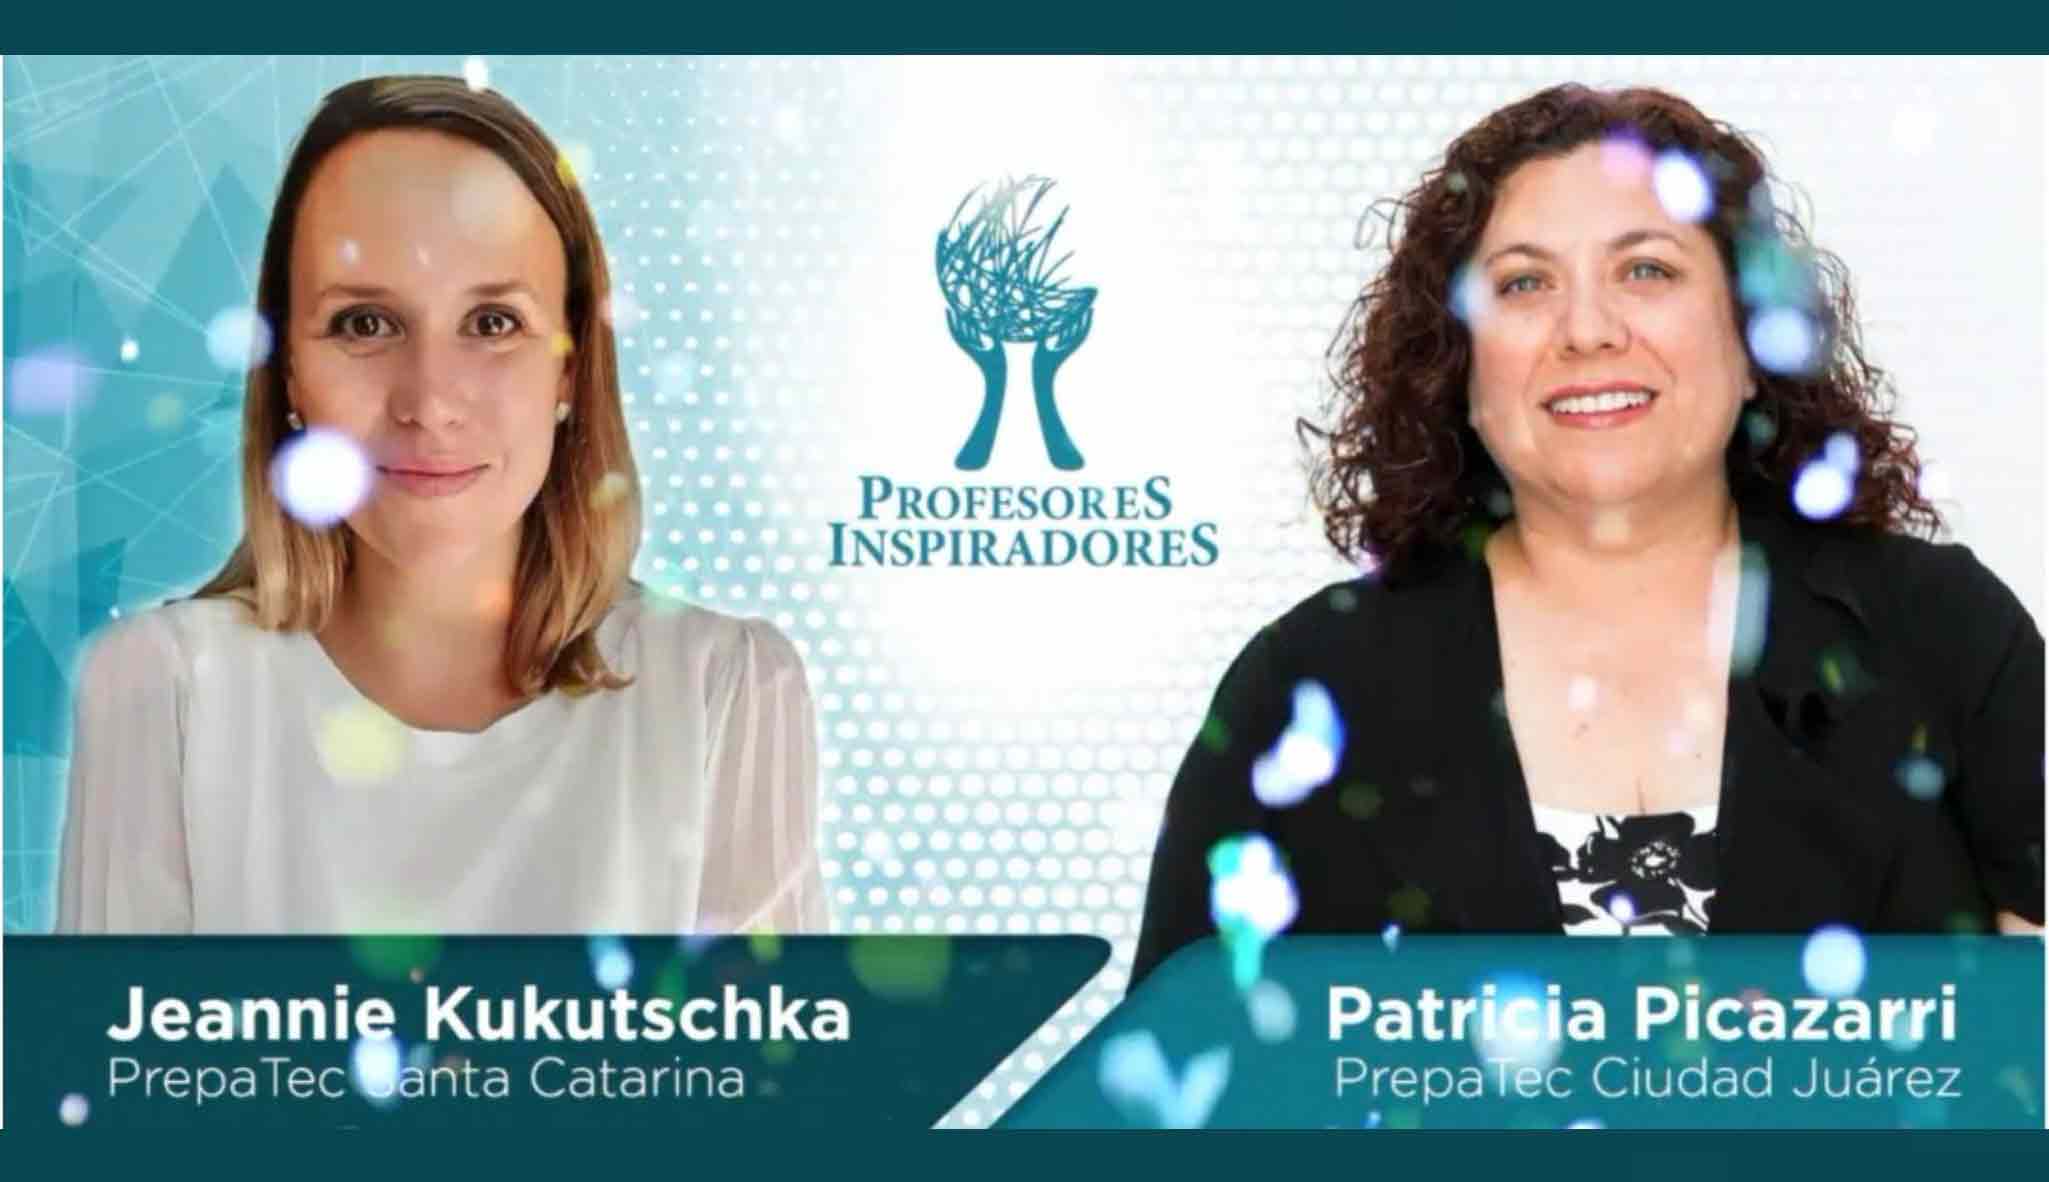 Patricia Picazarri y Jeannie Kukutschka ganan el premio a nivel nacional.